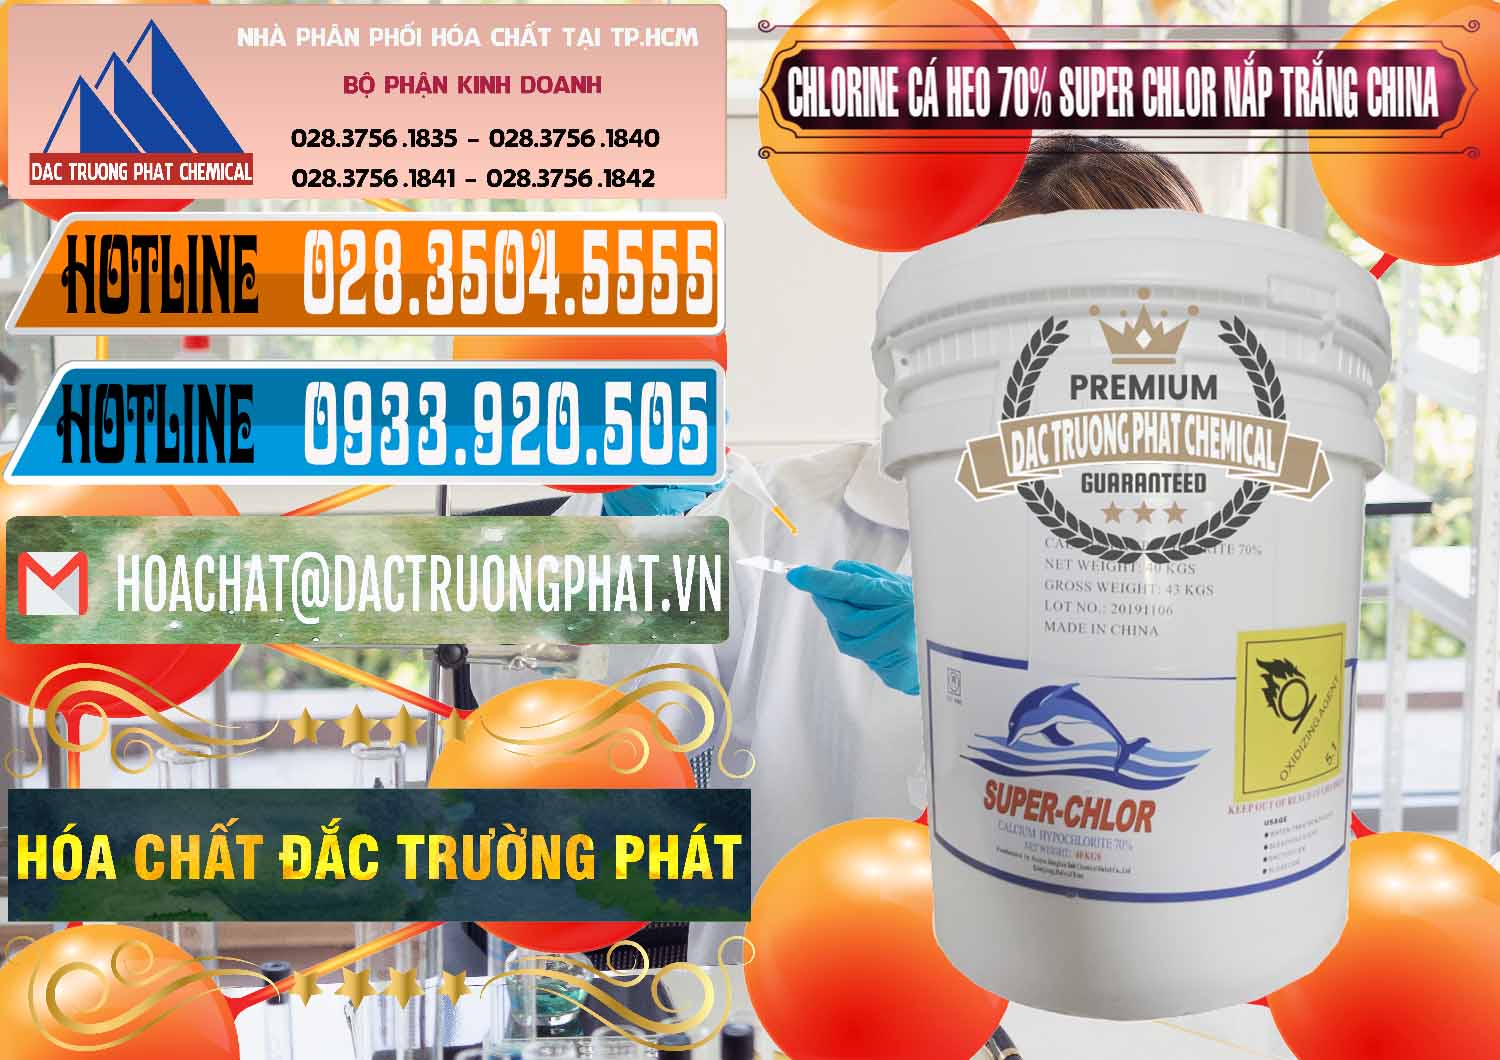 Cty bán - phân phối Clorin - Chlorine Cá Heo 70% Super Chlor Nắp Trắng Trung Quốc China - 0240 - Cung cấp & bán hóa chất tại TP.HCM - stmp.net